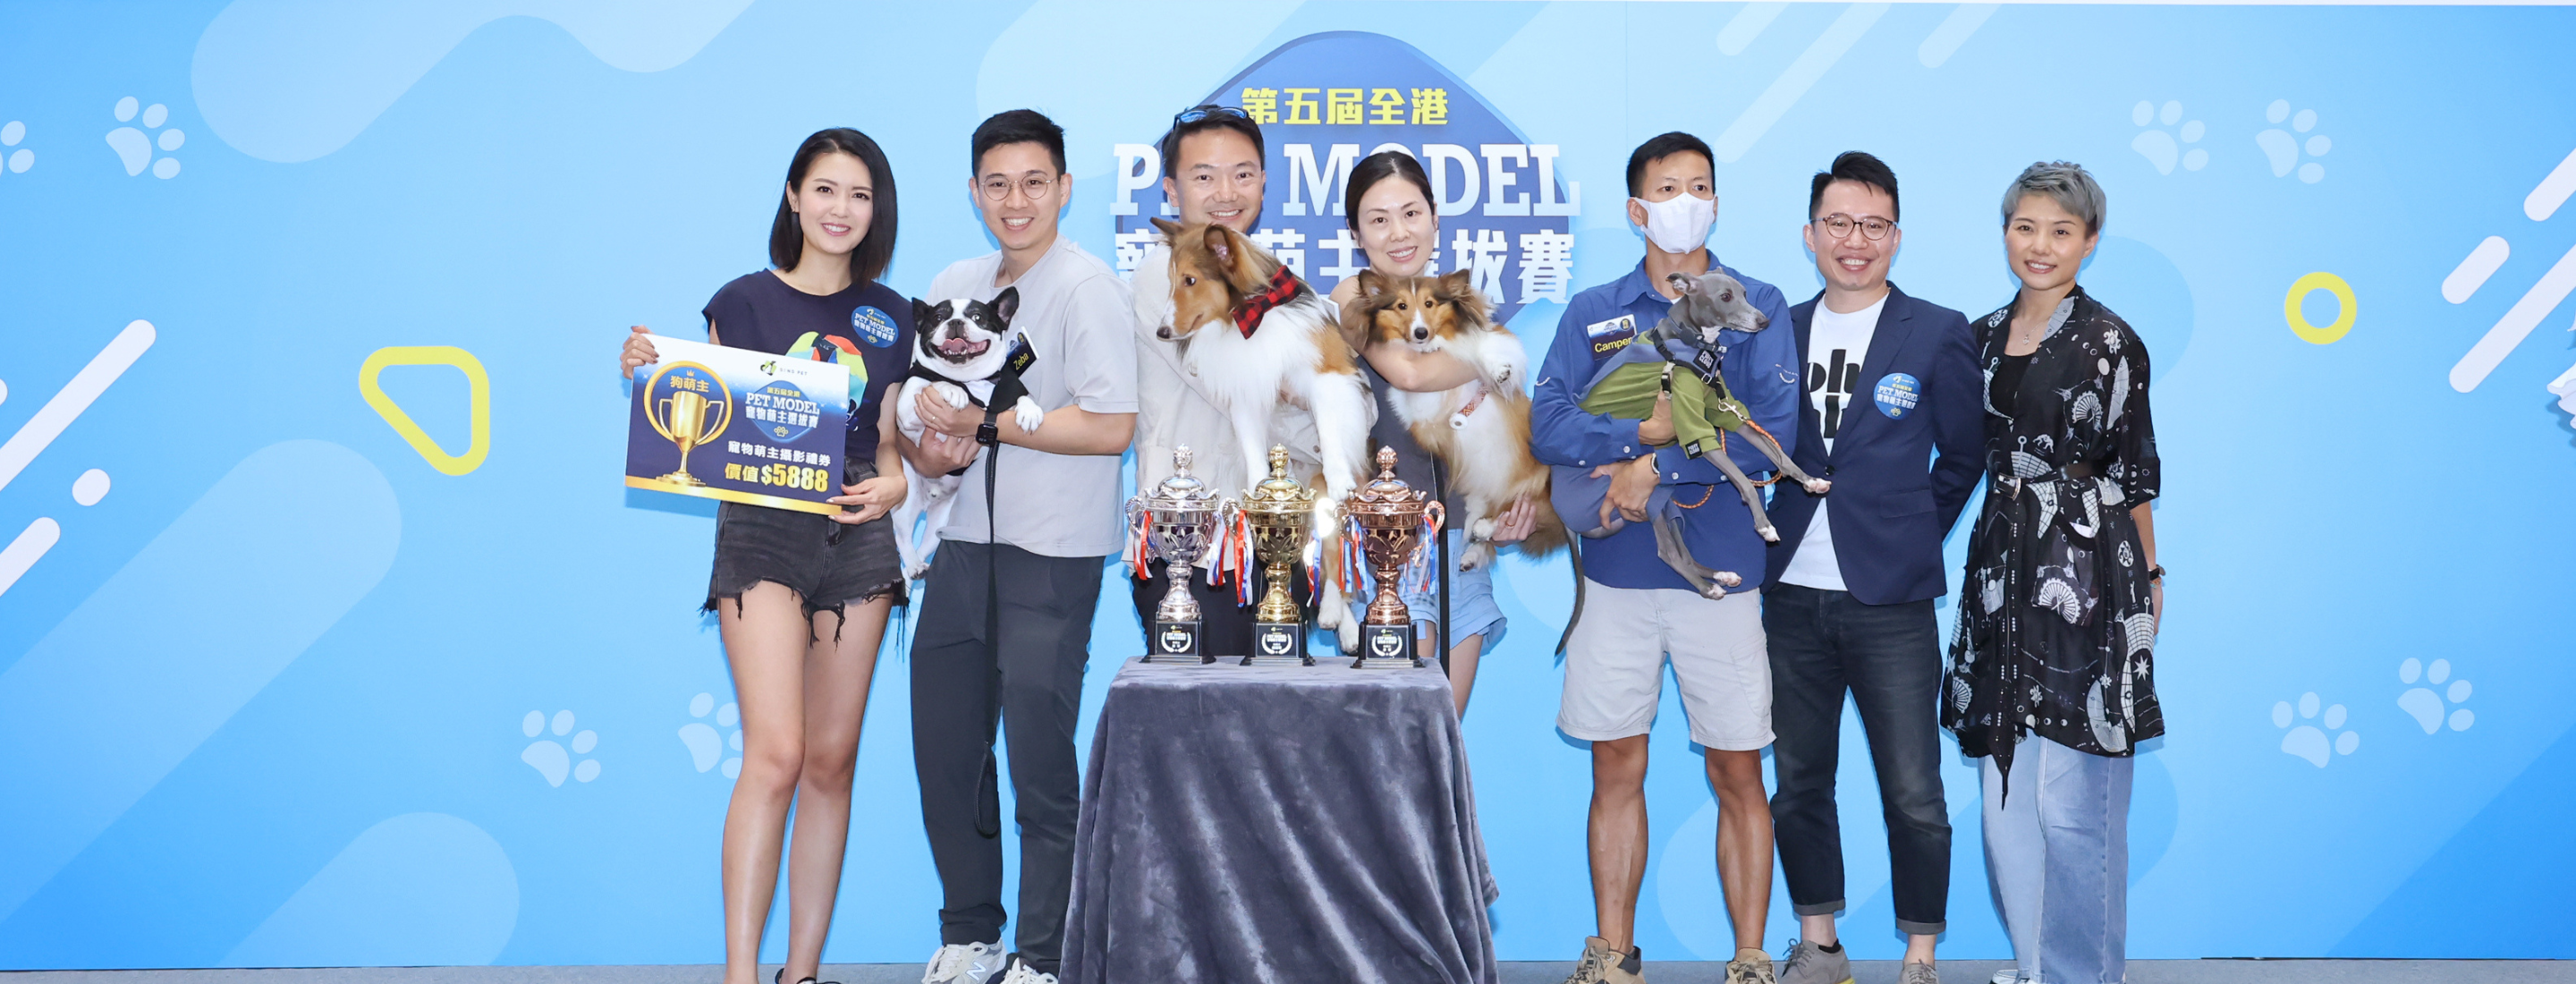 SENS Pet「第5屆 全港寵物萌主選拔賽」總決賽 2百萬港人關注寵物界盛事